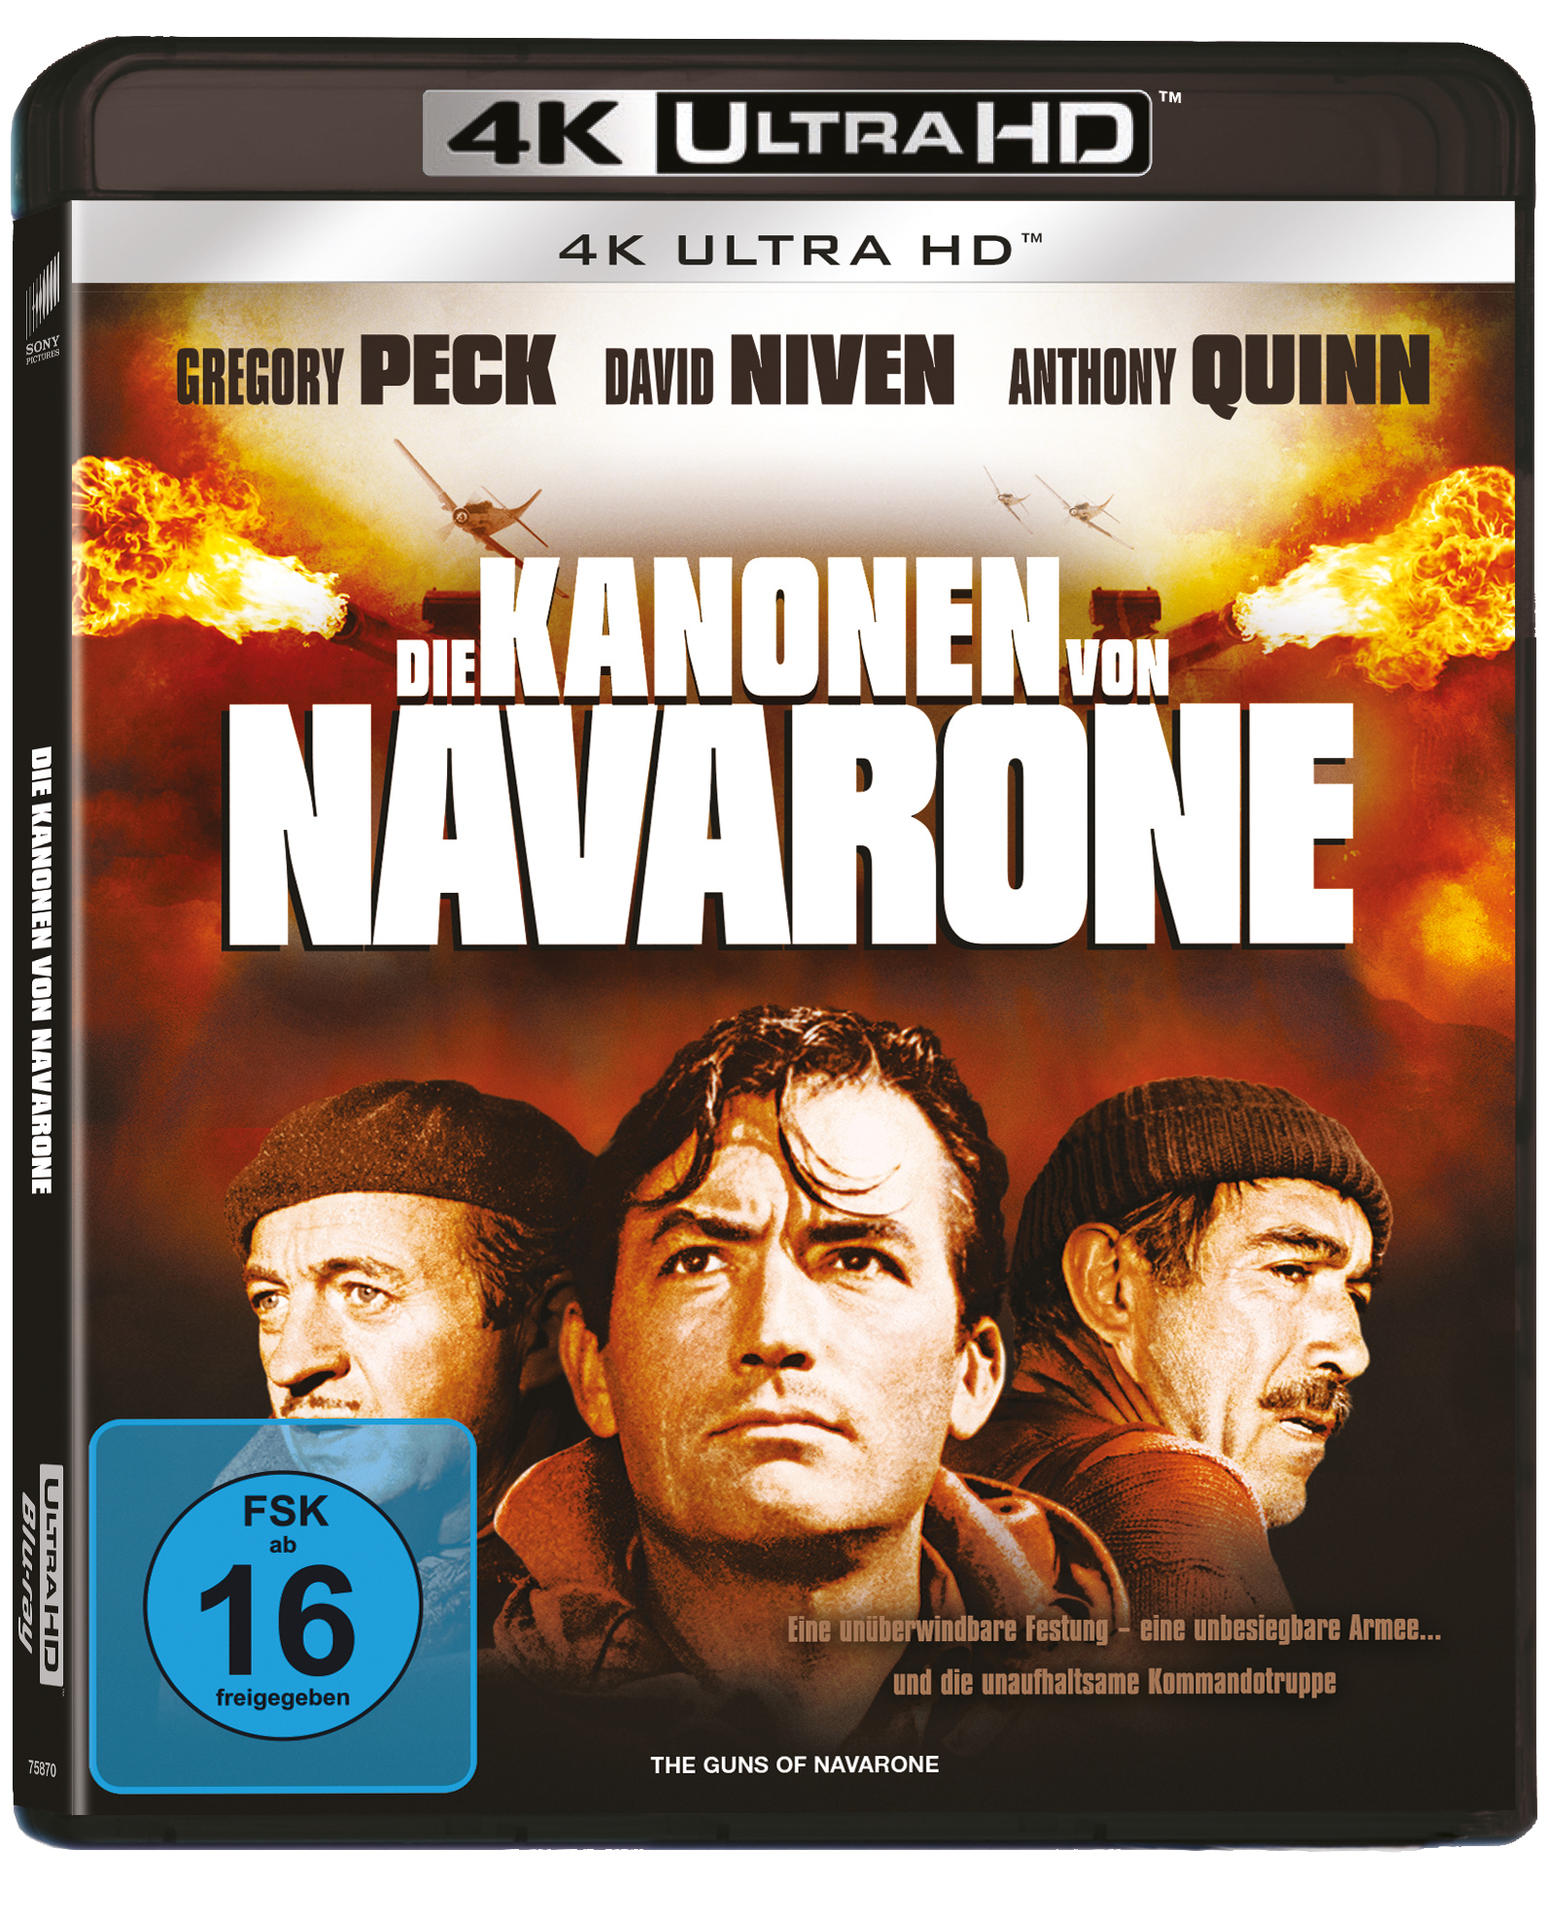 Die Kanonen von Ultra HD Blu-ray Navarone 4K